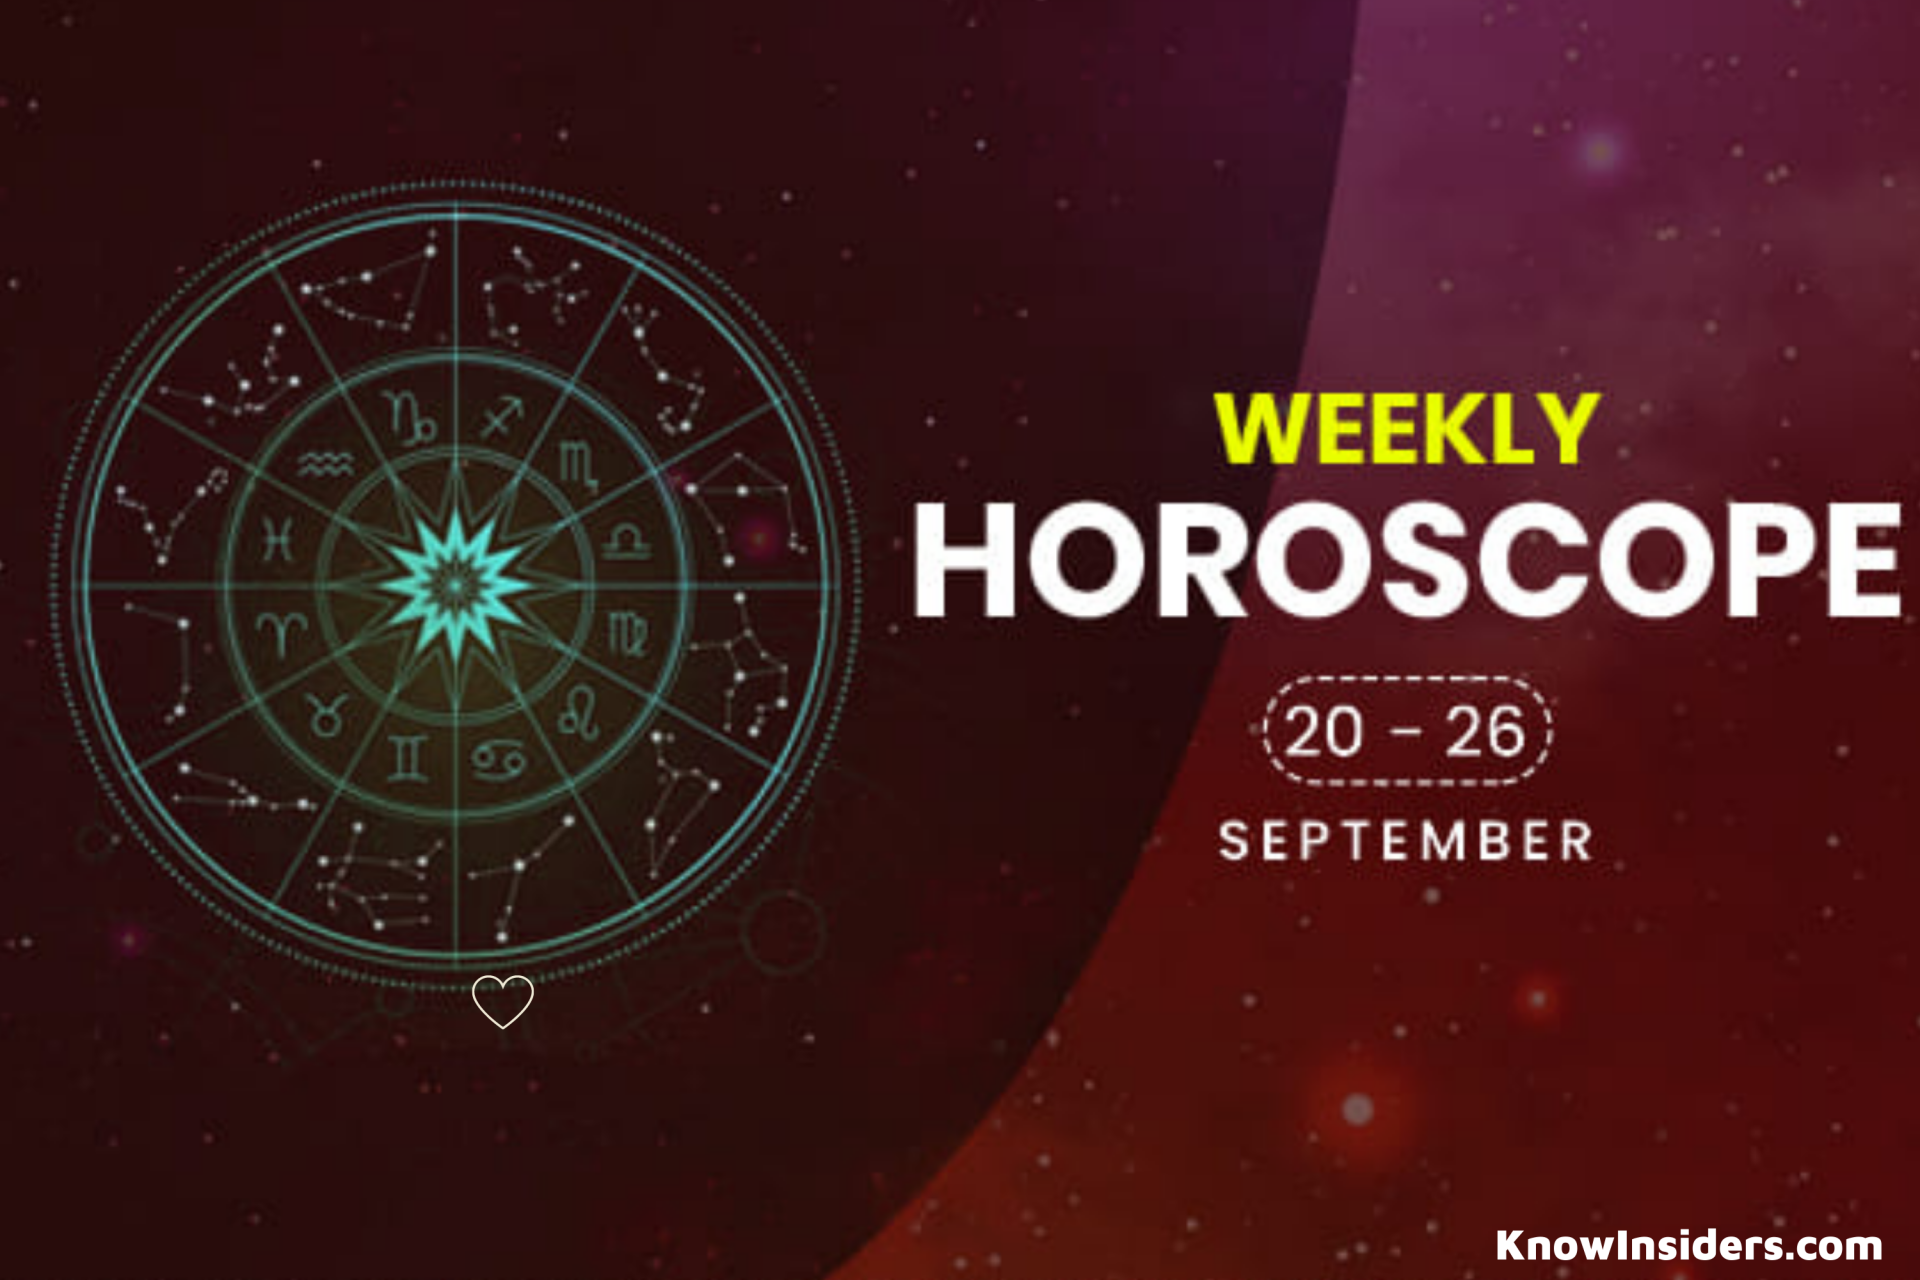 Zodiac 26 september September 26